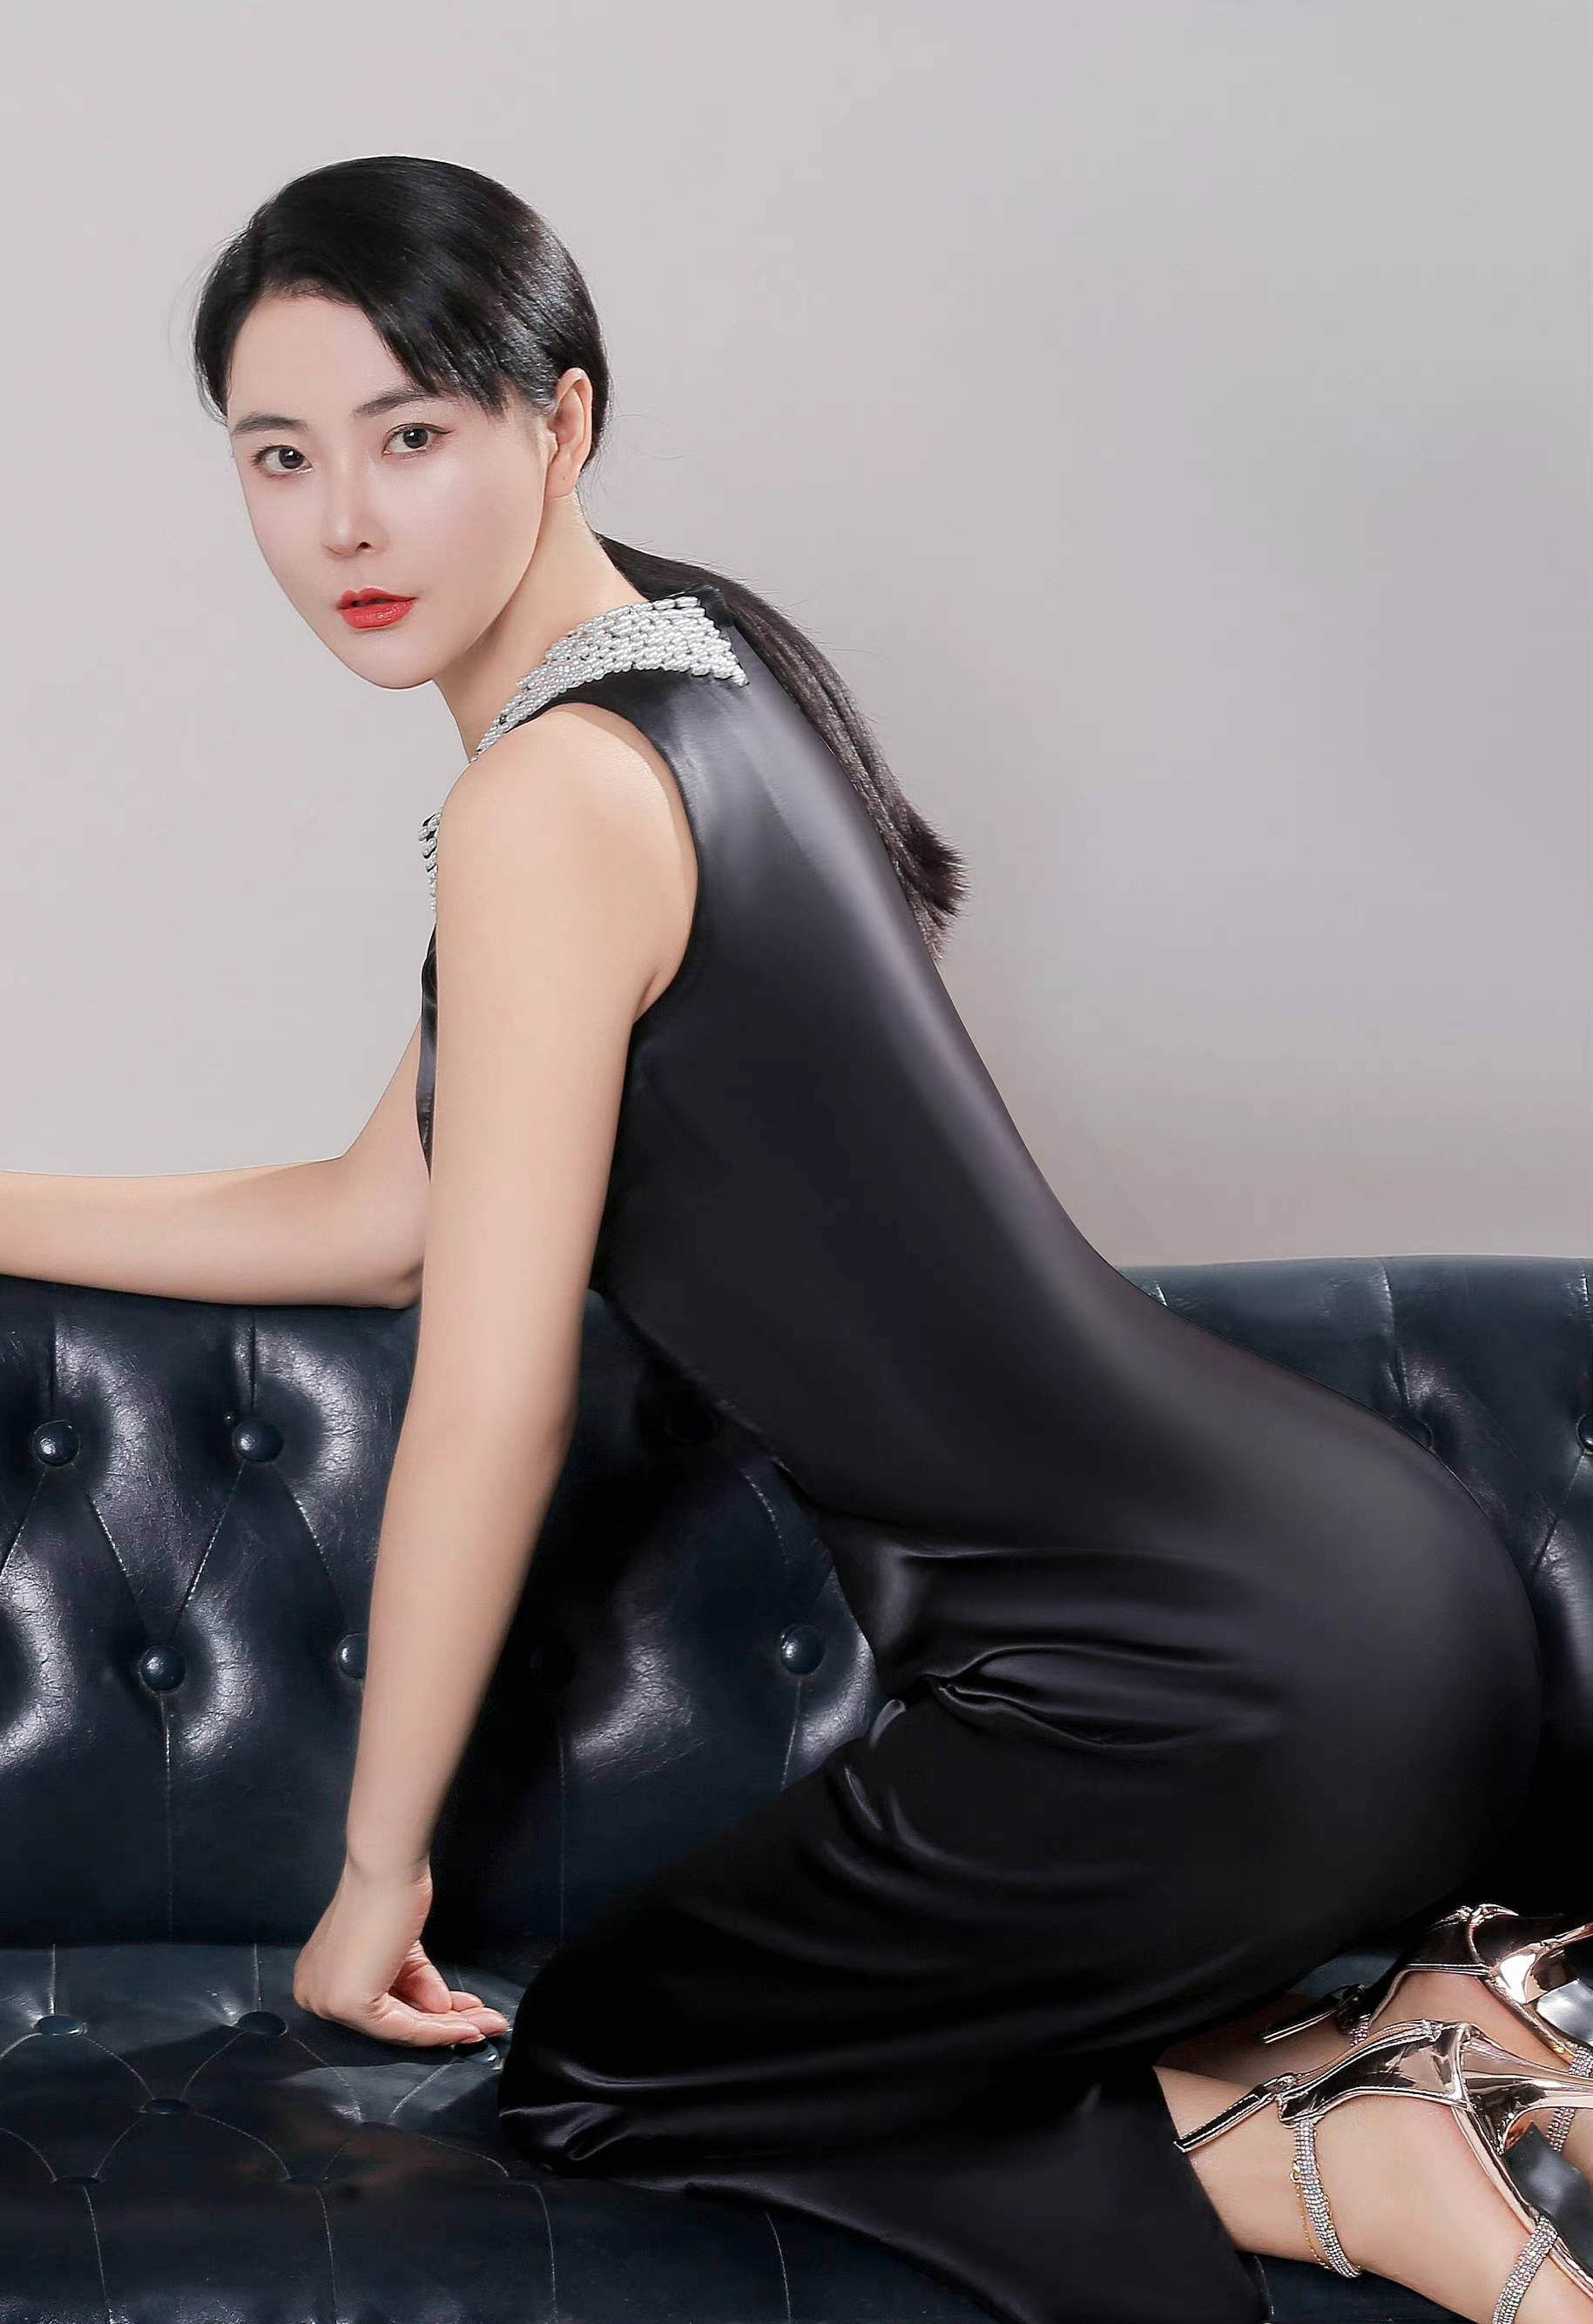 亚洲小姐冠军吴丹分享两款衣服写真,却有不同的美丽效果